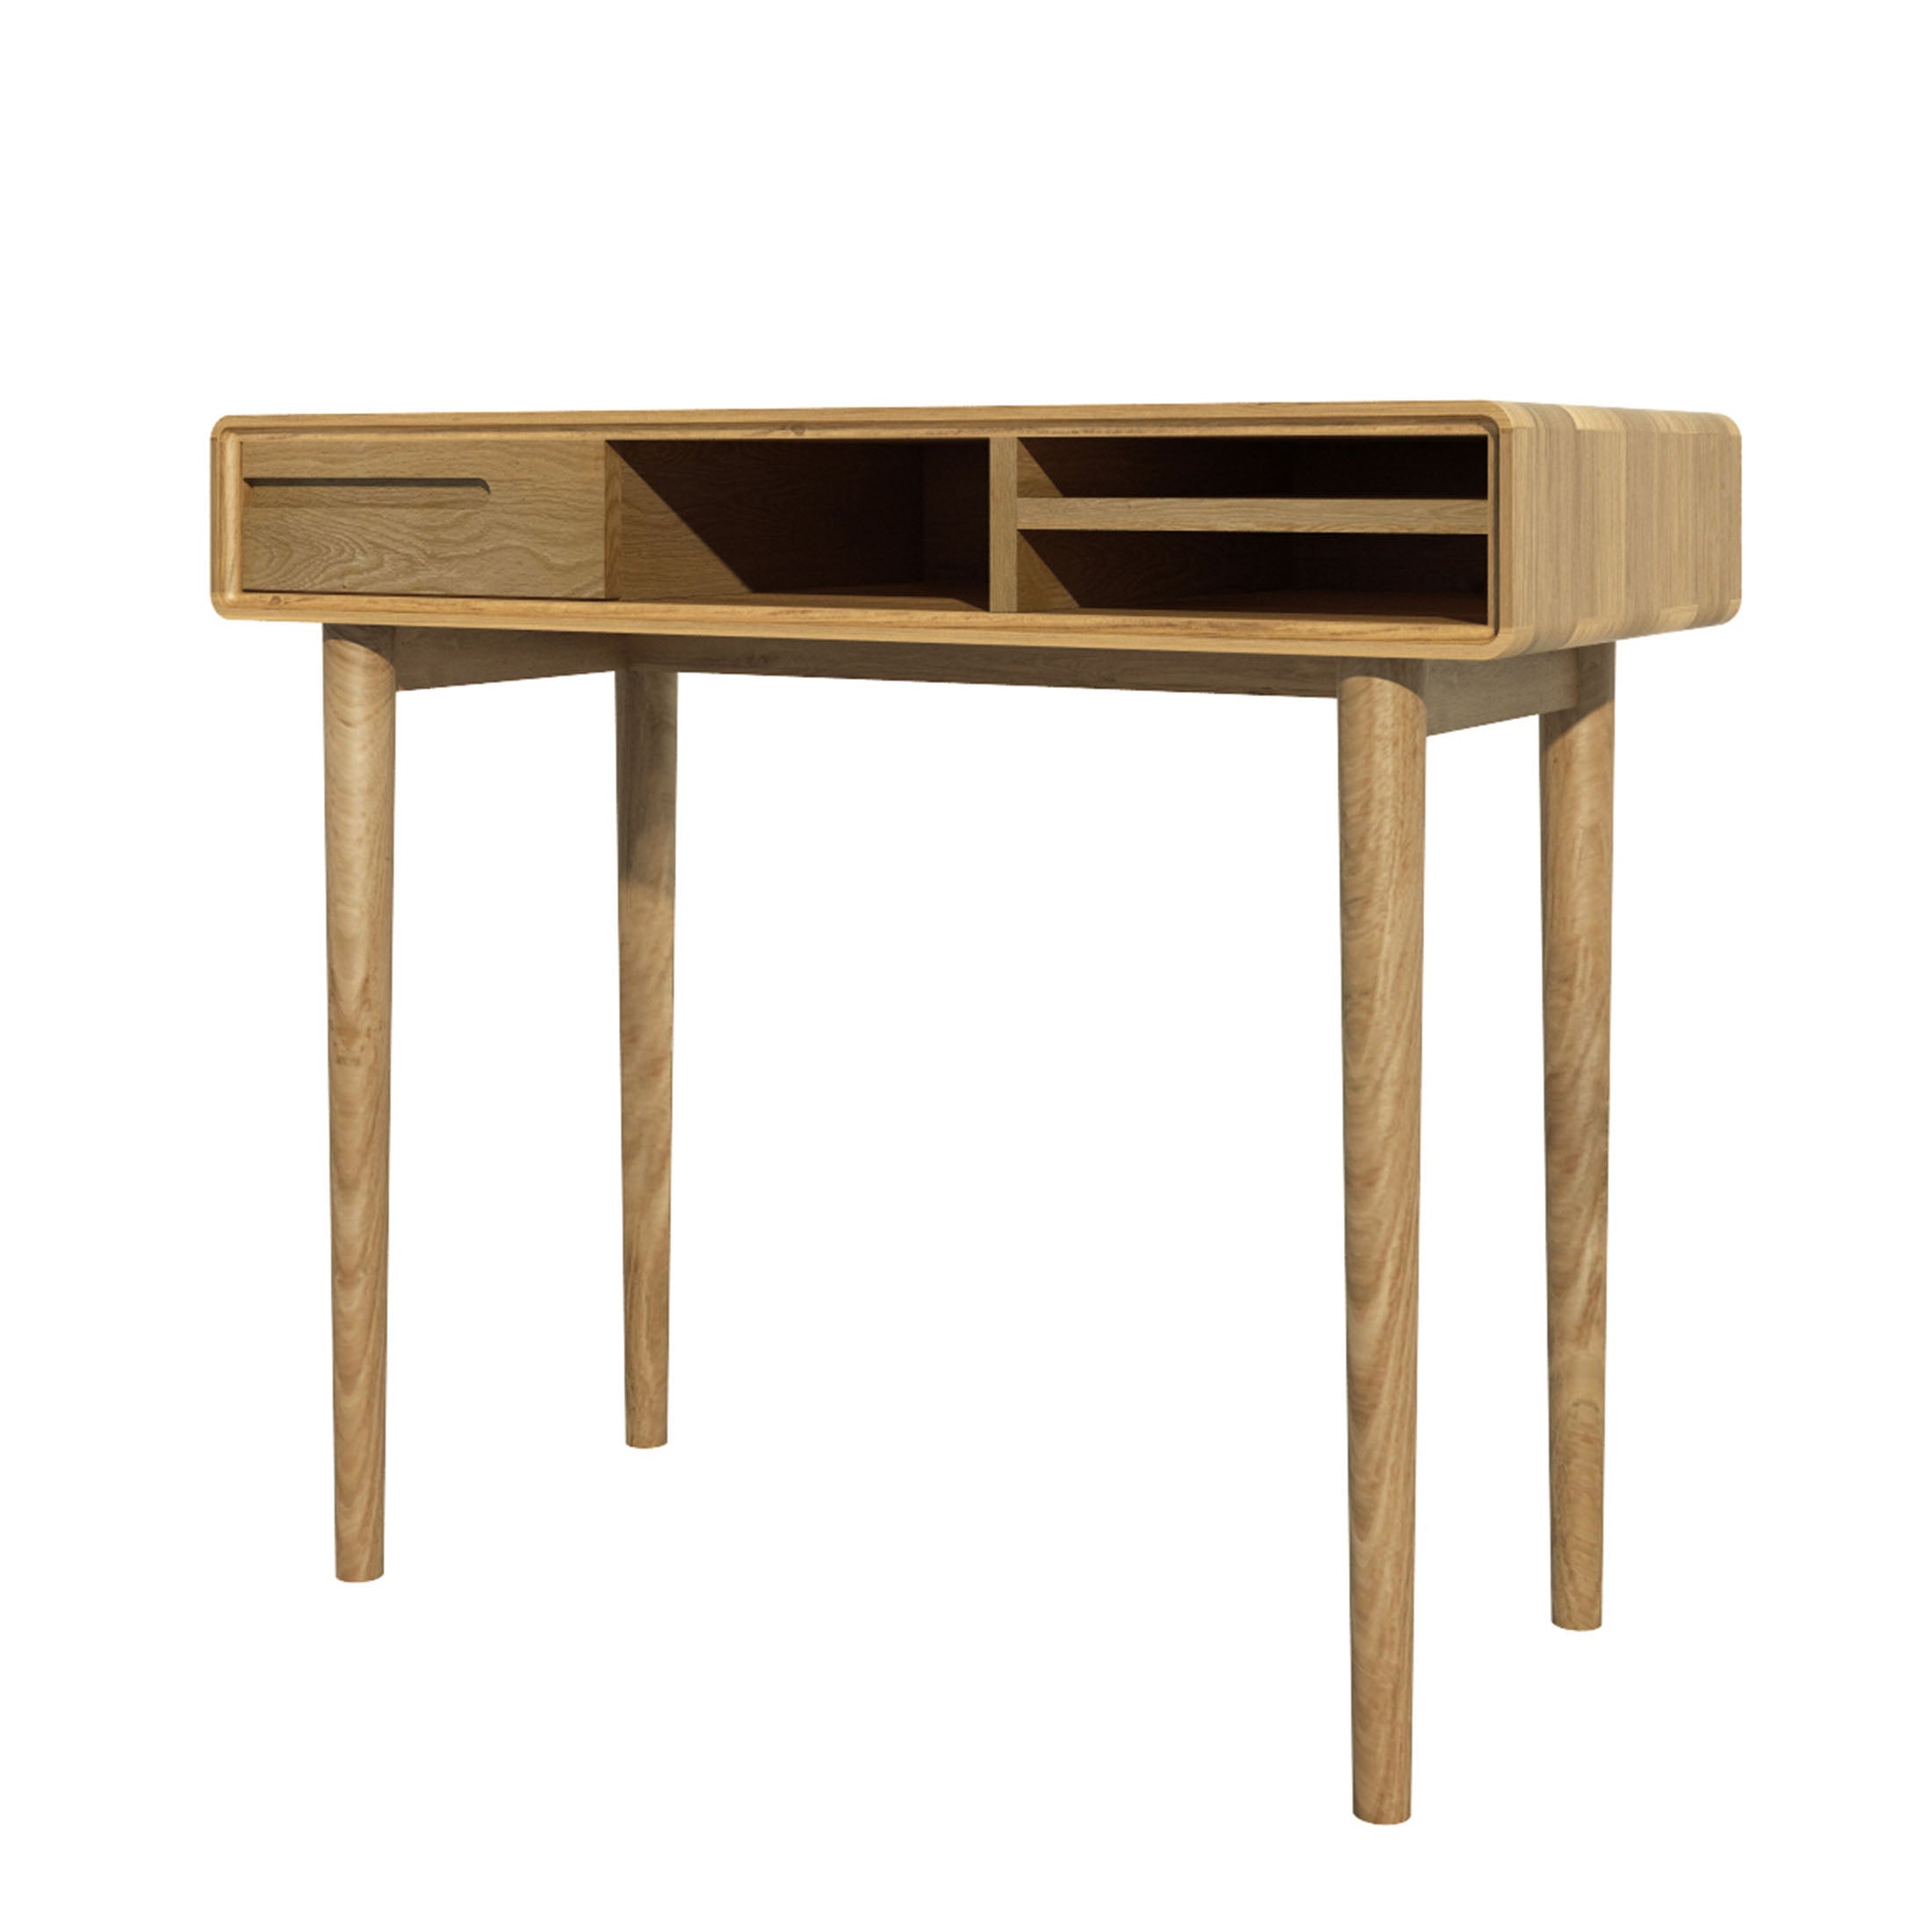 Nordic Scandic Oak Furniture Office desk or Home desk from Top Secret Furniture